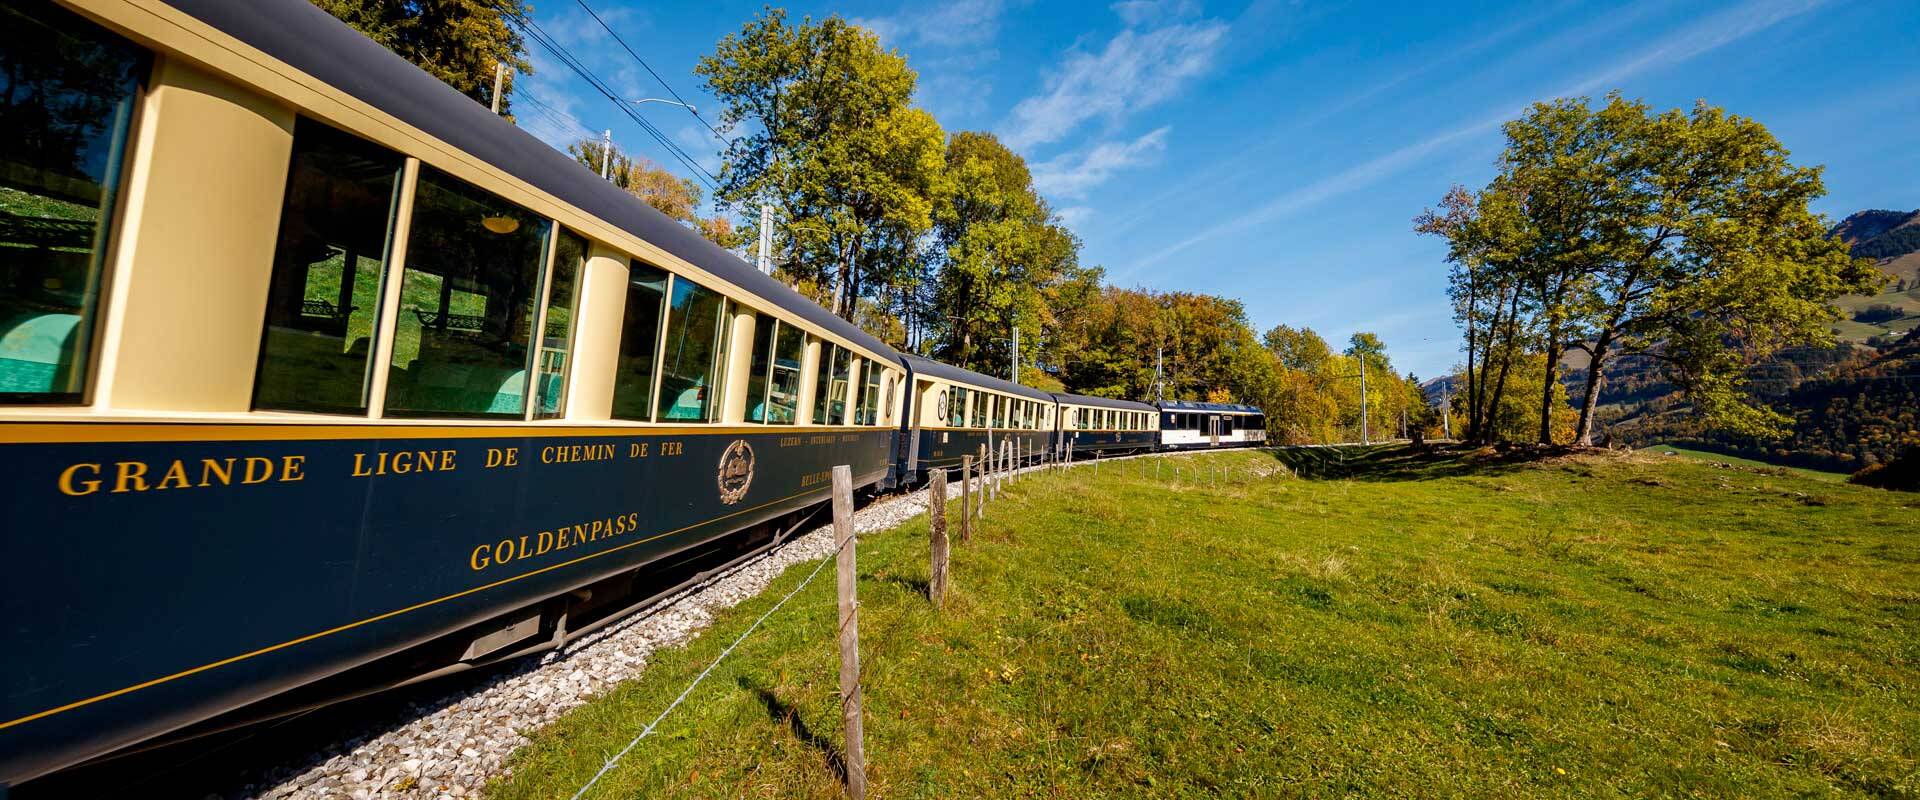 The Swiss Chocolate Train. Foto: Reprodução